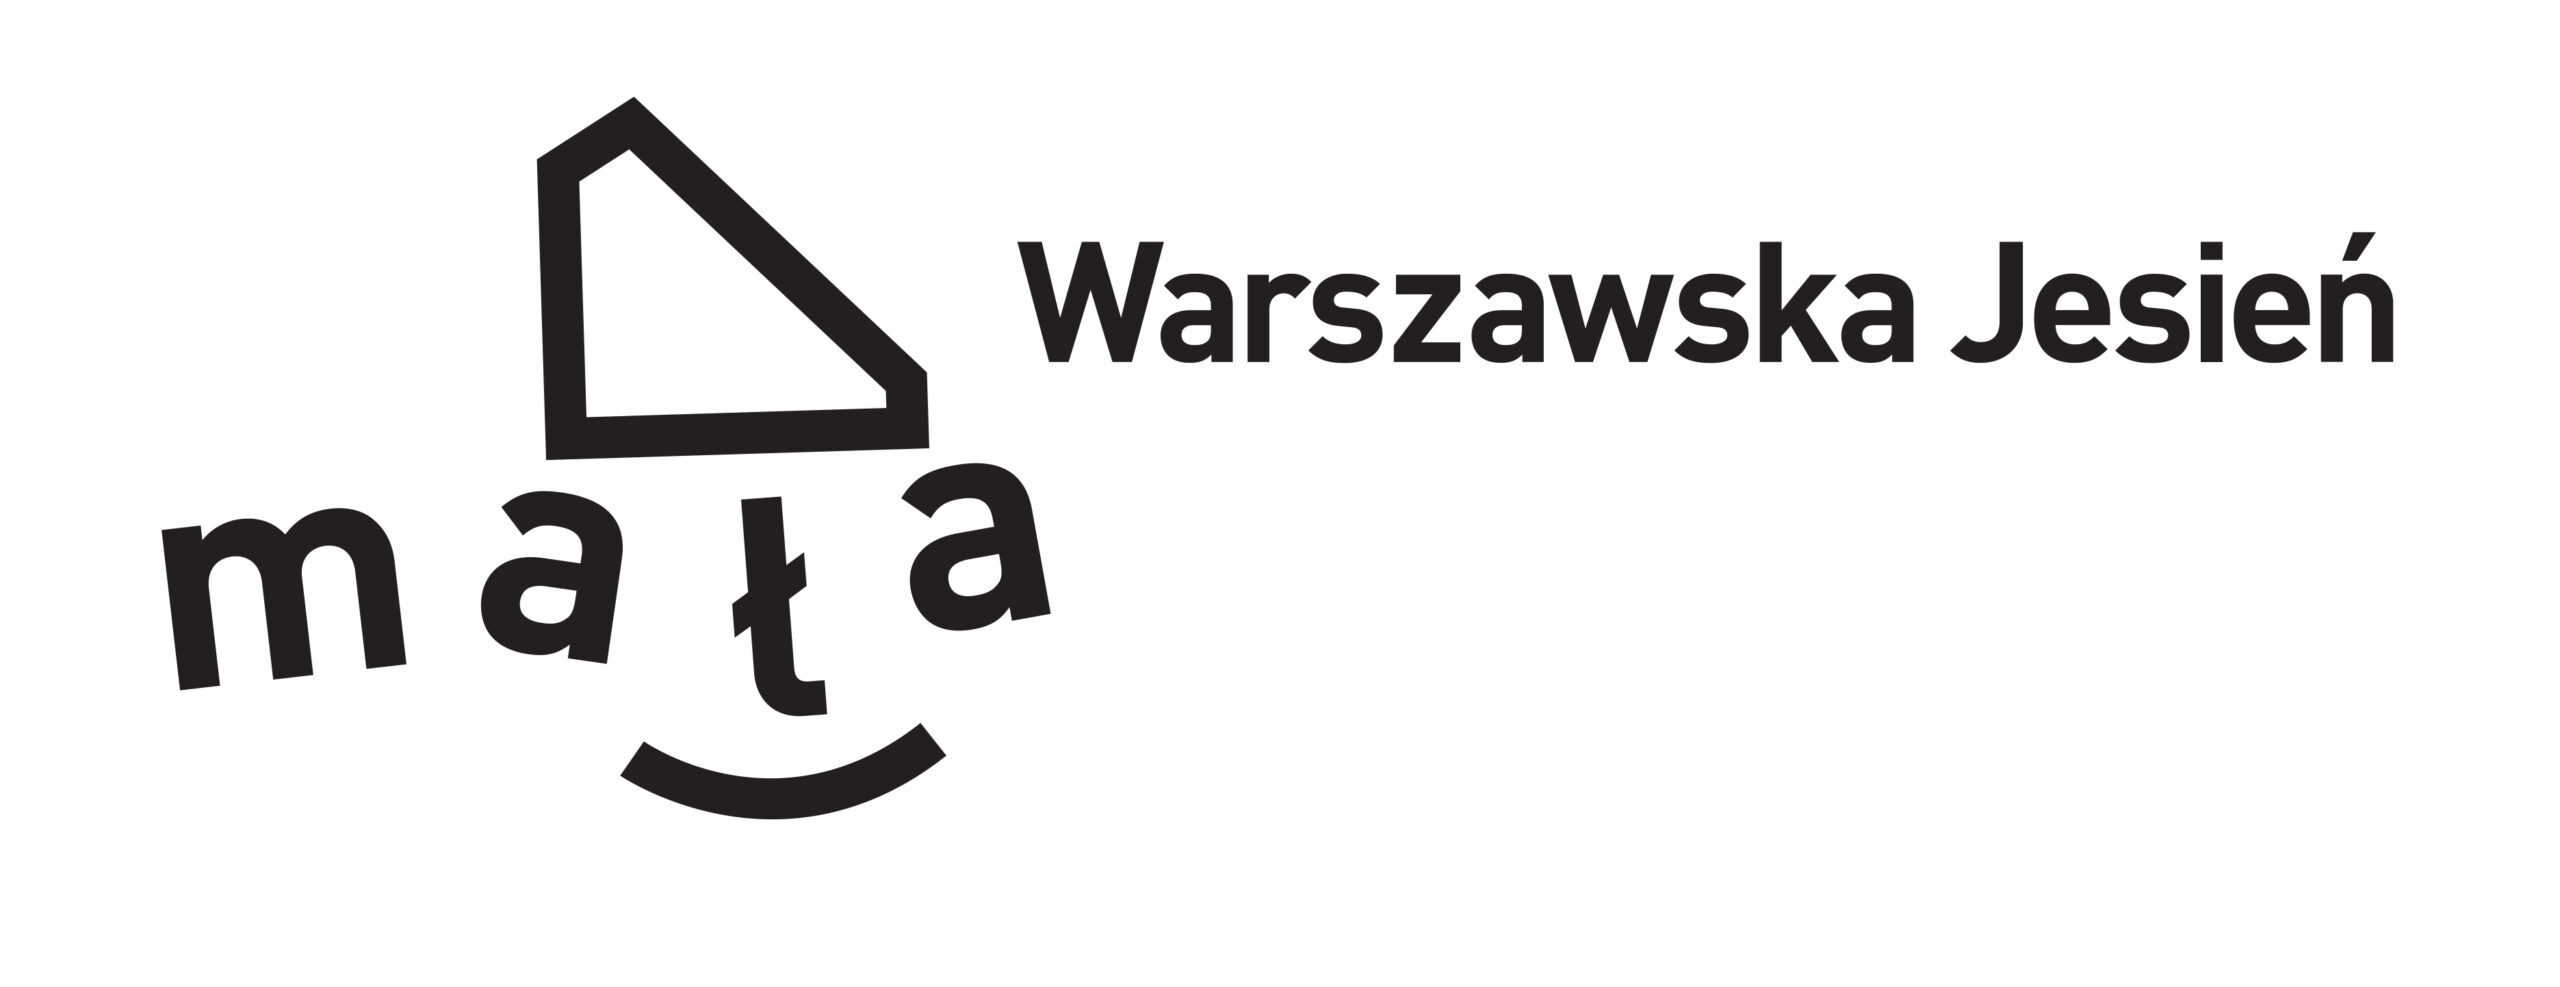 Logo: Mała Warszawska Jesień